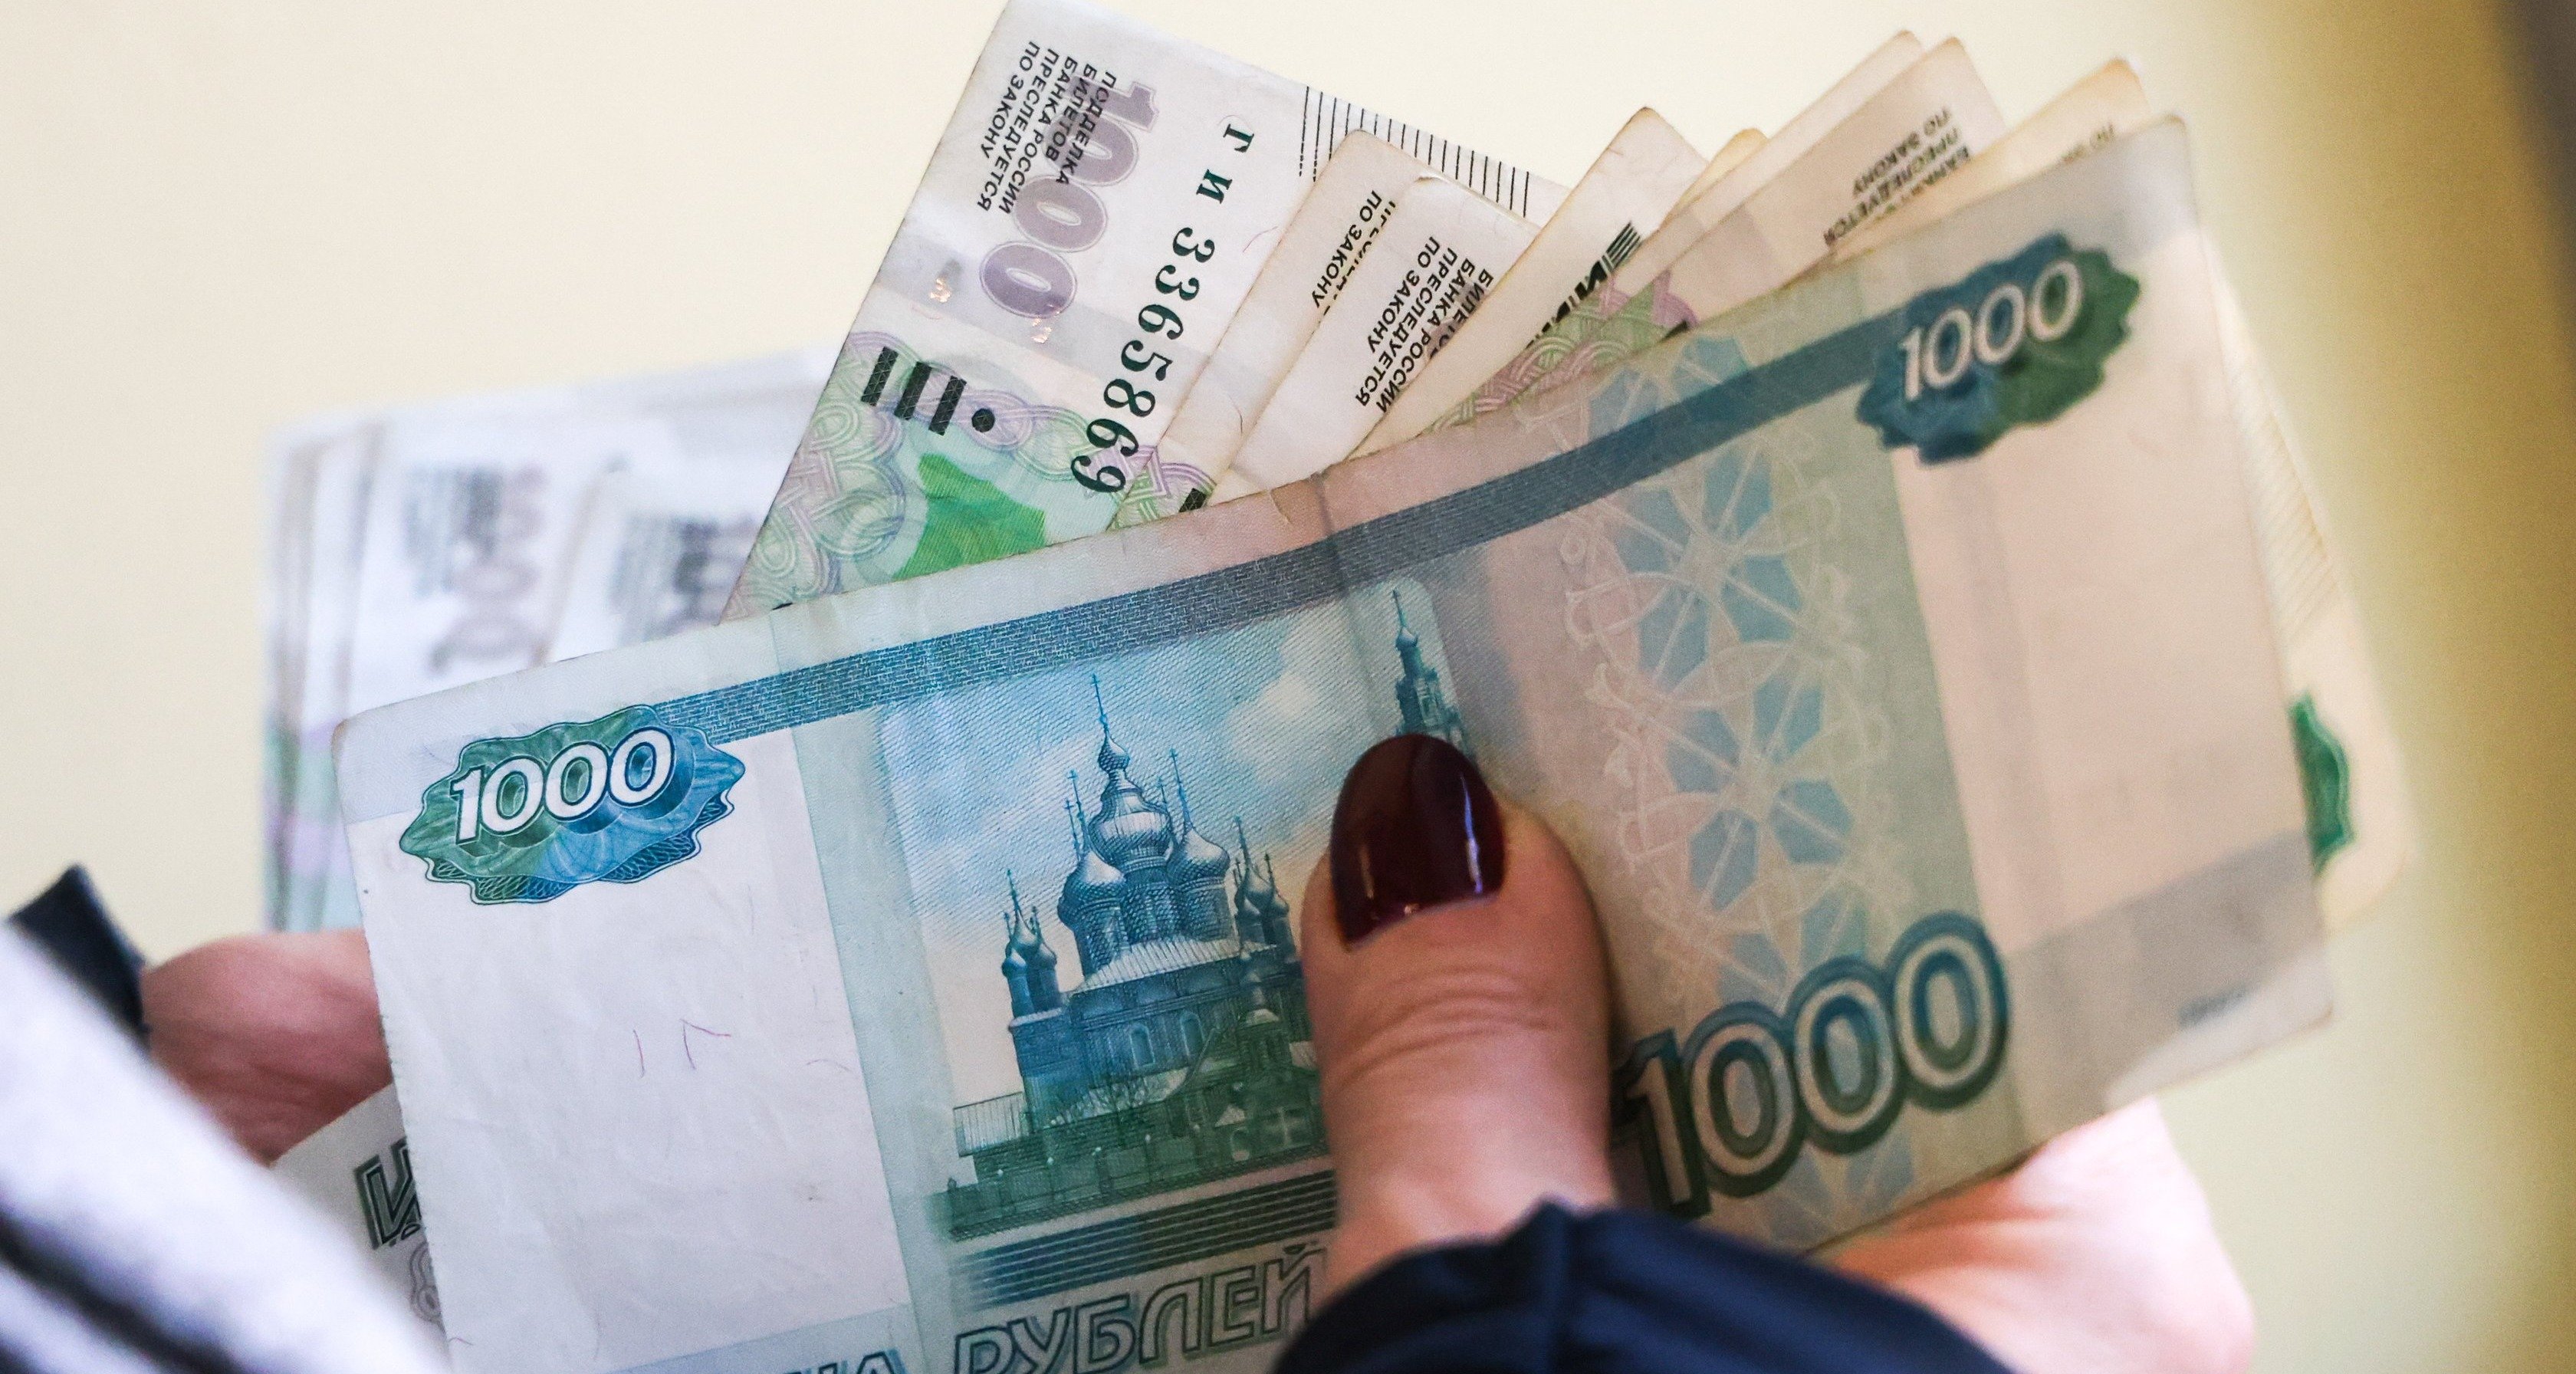 С доходов превышающих 300 тыс рублей